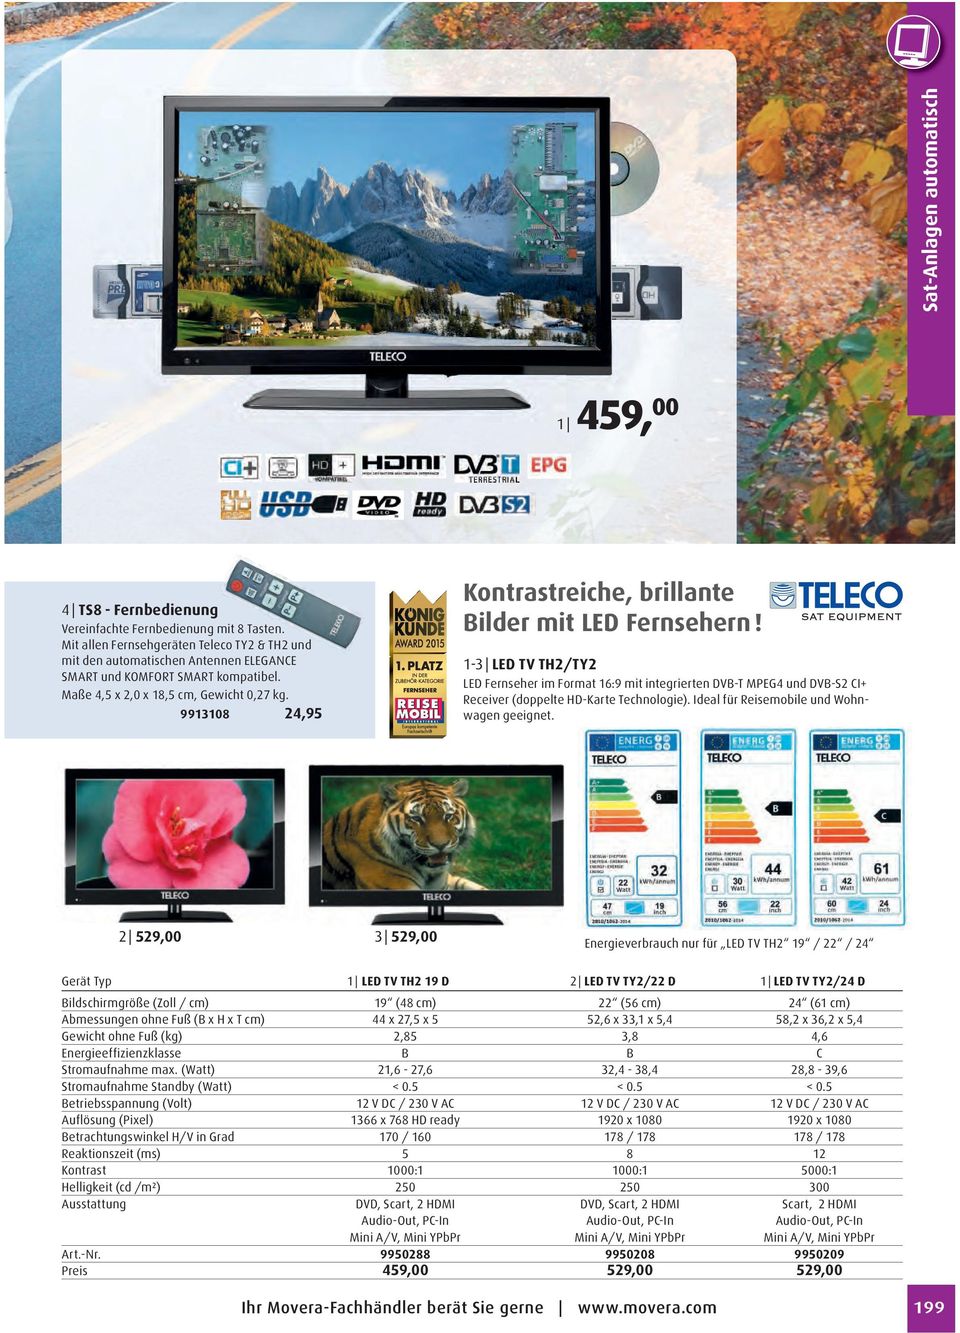 1-3 LED TV TH2/TY2 LED Fernseher im Format 16:9 mit integrierten DVB-T MPEG4 und DVB-S2 CI Receiver (doppelte HD-Karte Technologie). Ideal für Reisemobile und Wohnwagen geeignet.